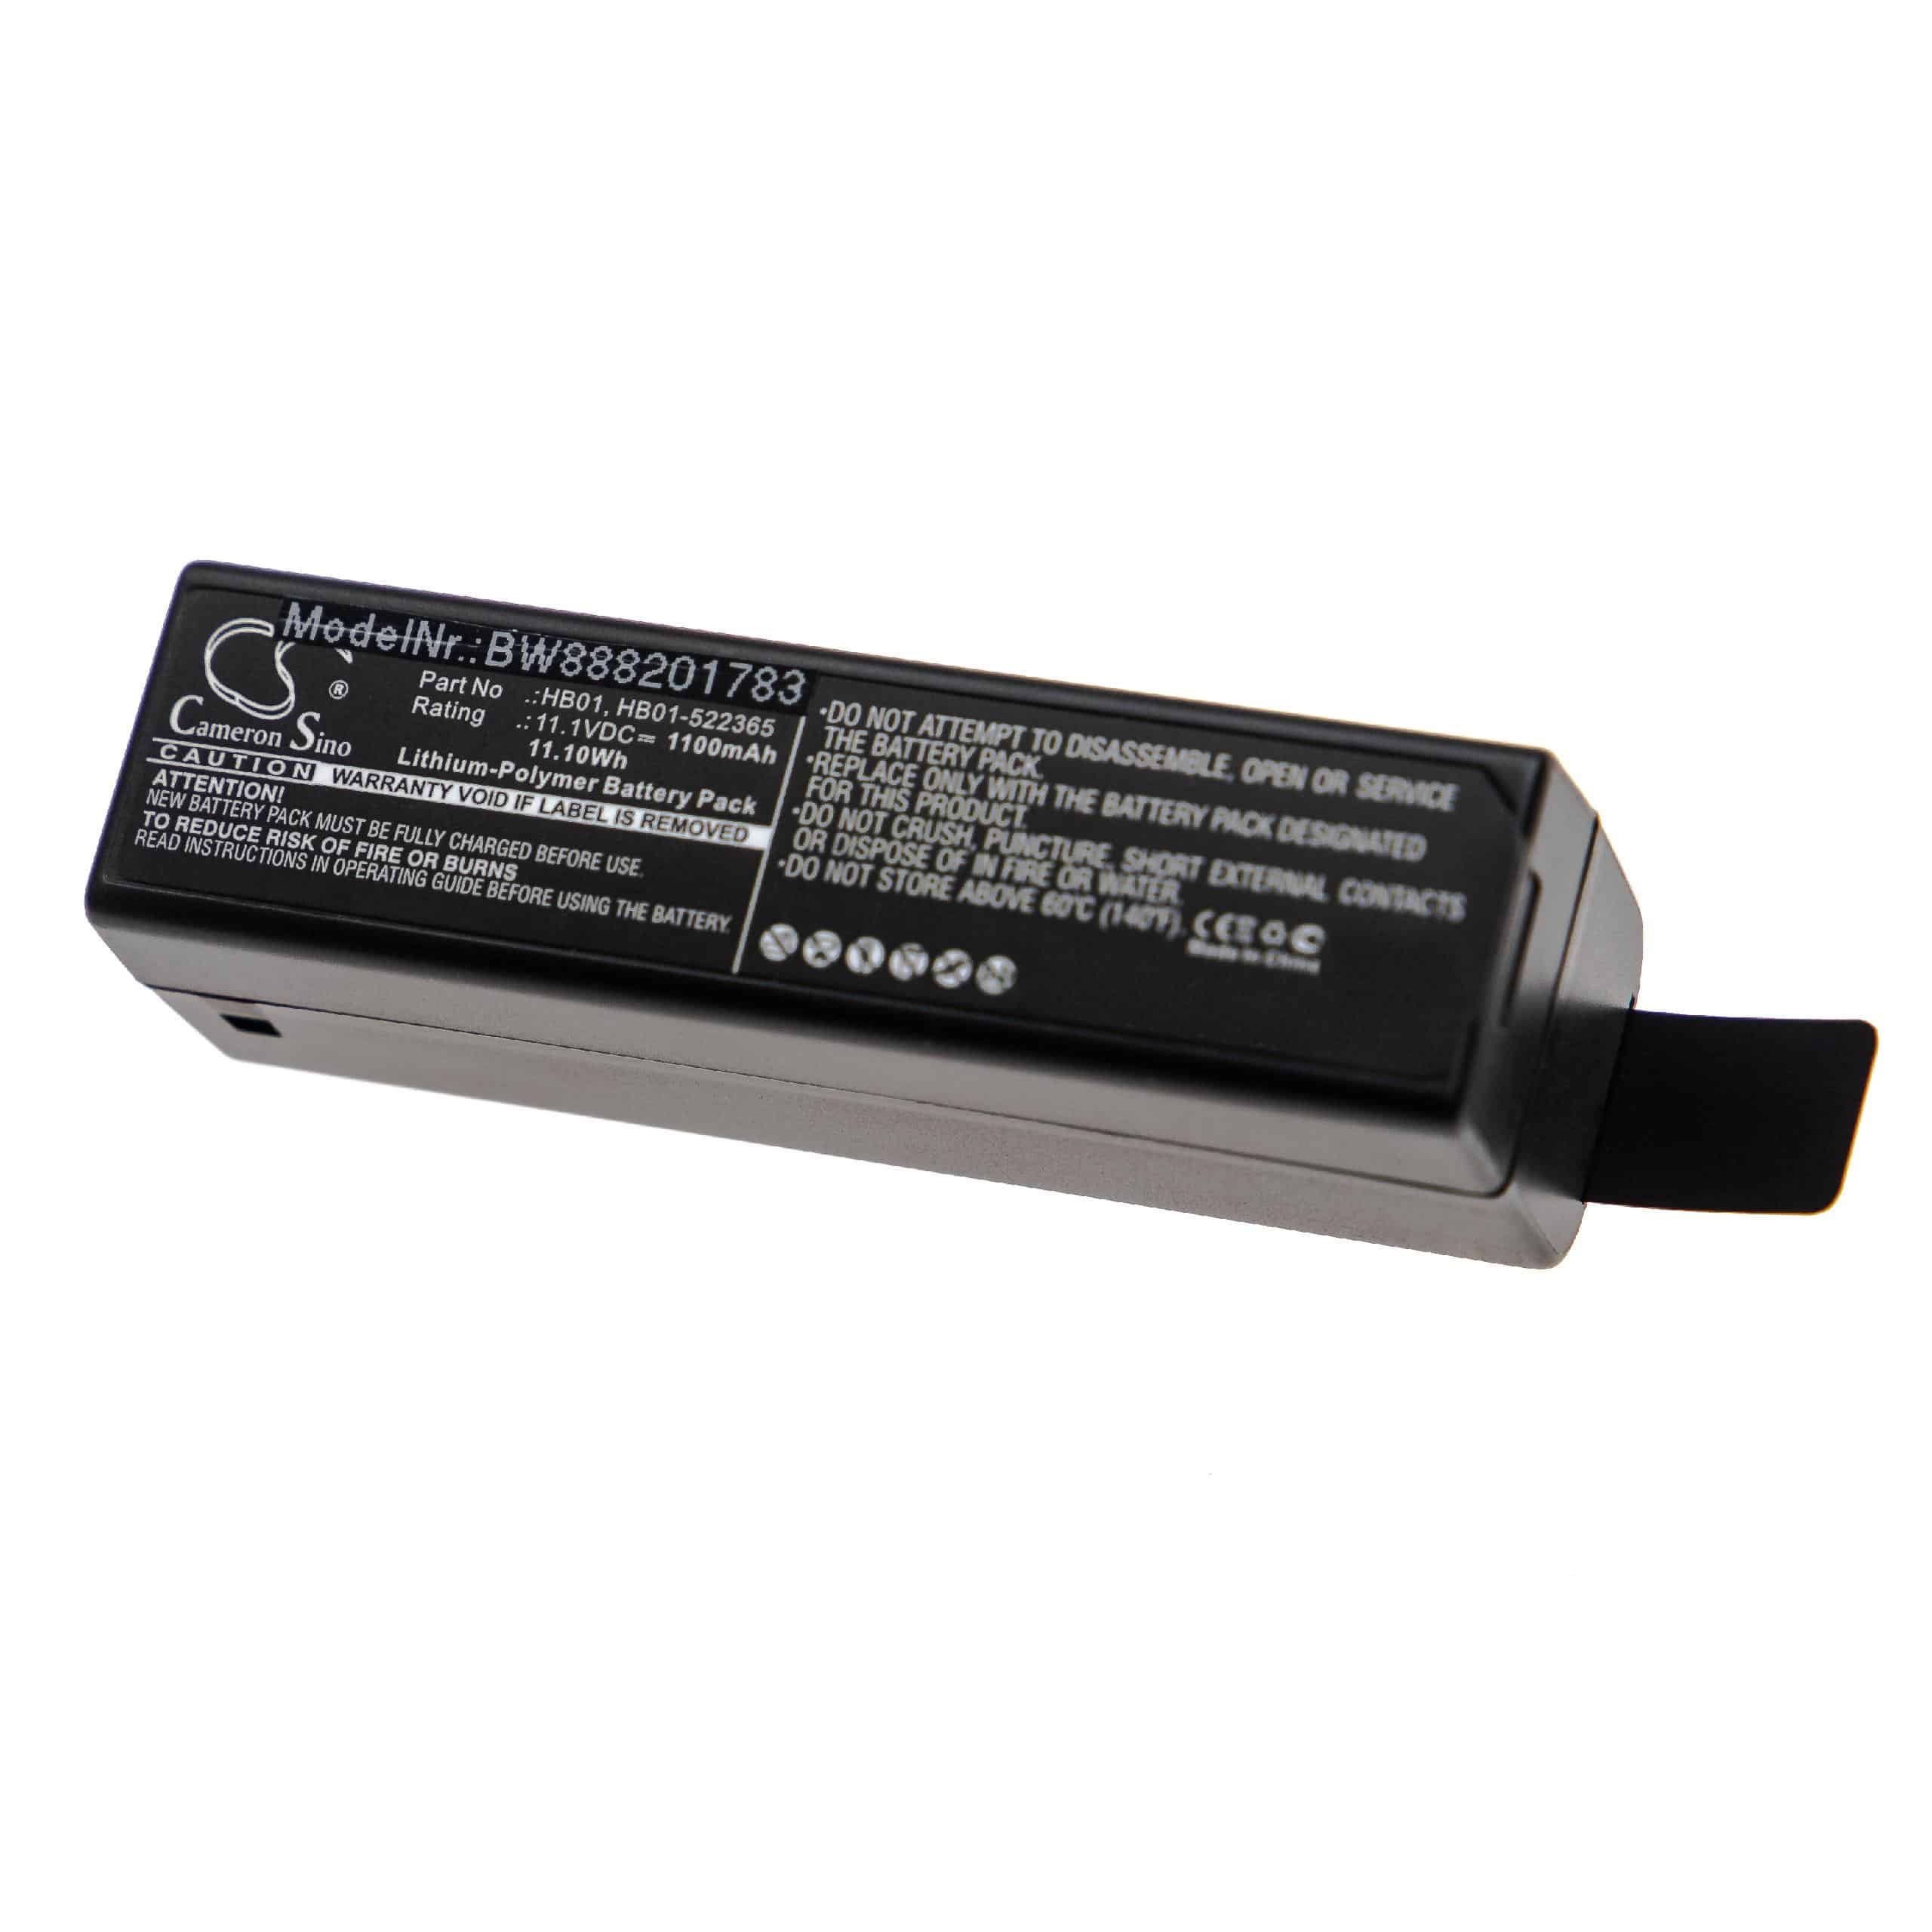 Battery Replacement for DJI HB01, HB01-522365 - 1100mAh, 11.1V, Li-polymer